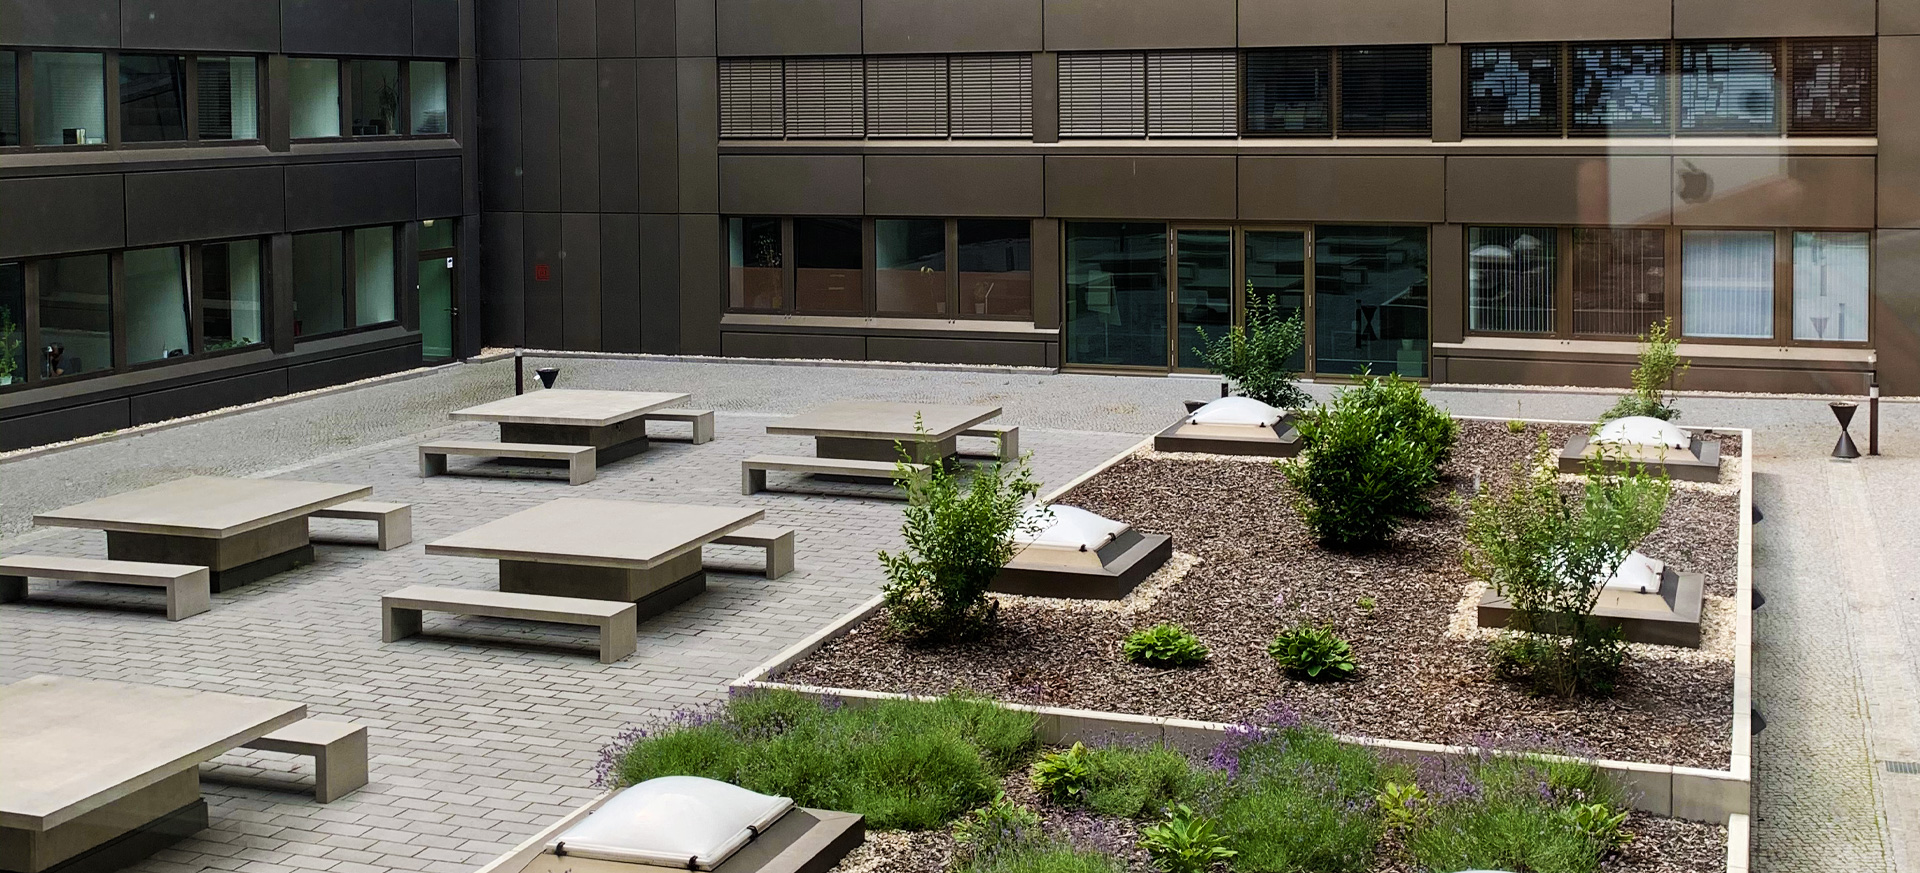 Blick auf die weitläufige Terrasse des Campus Berlin.